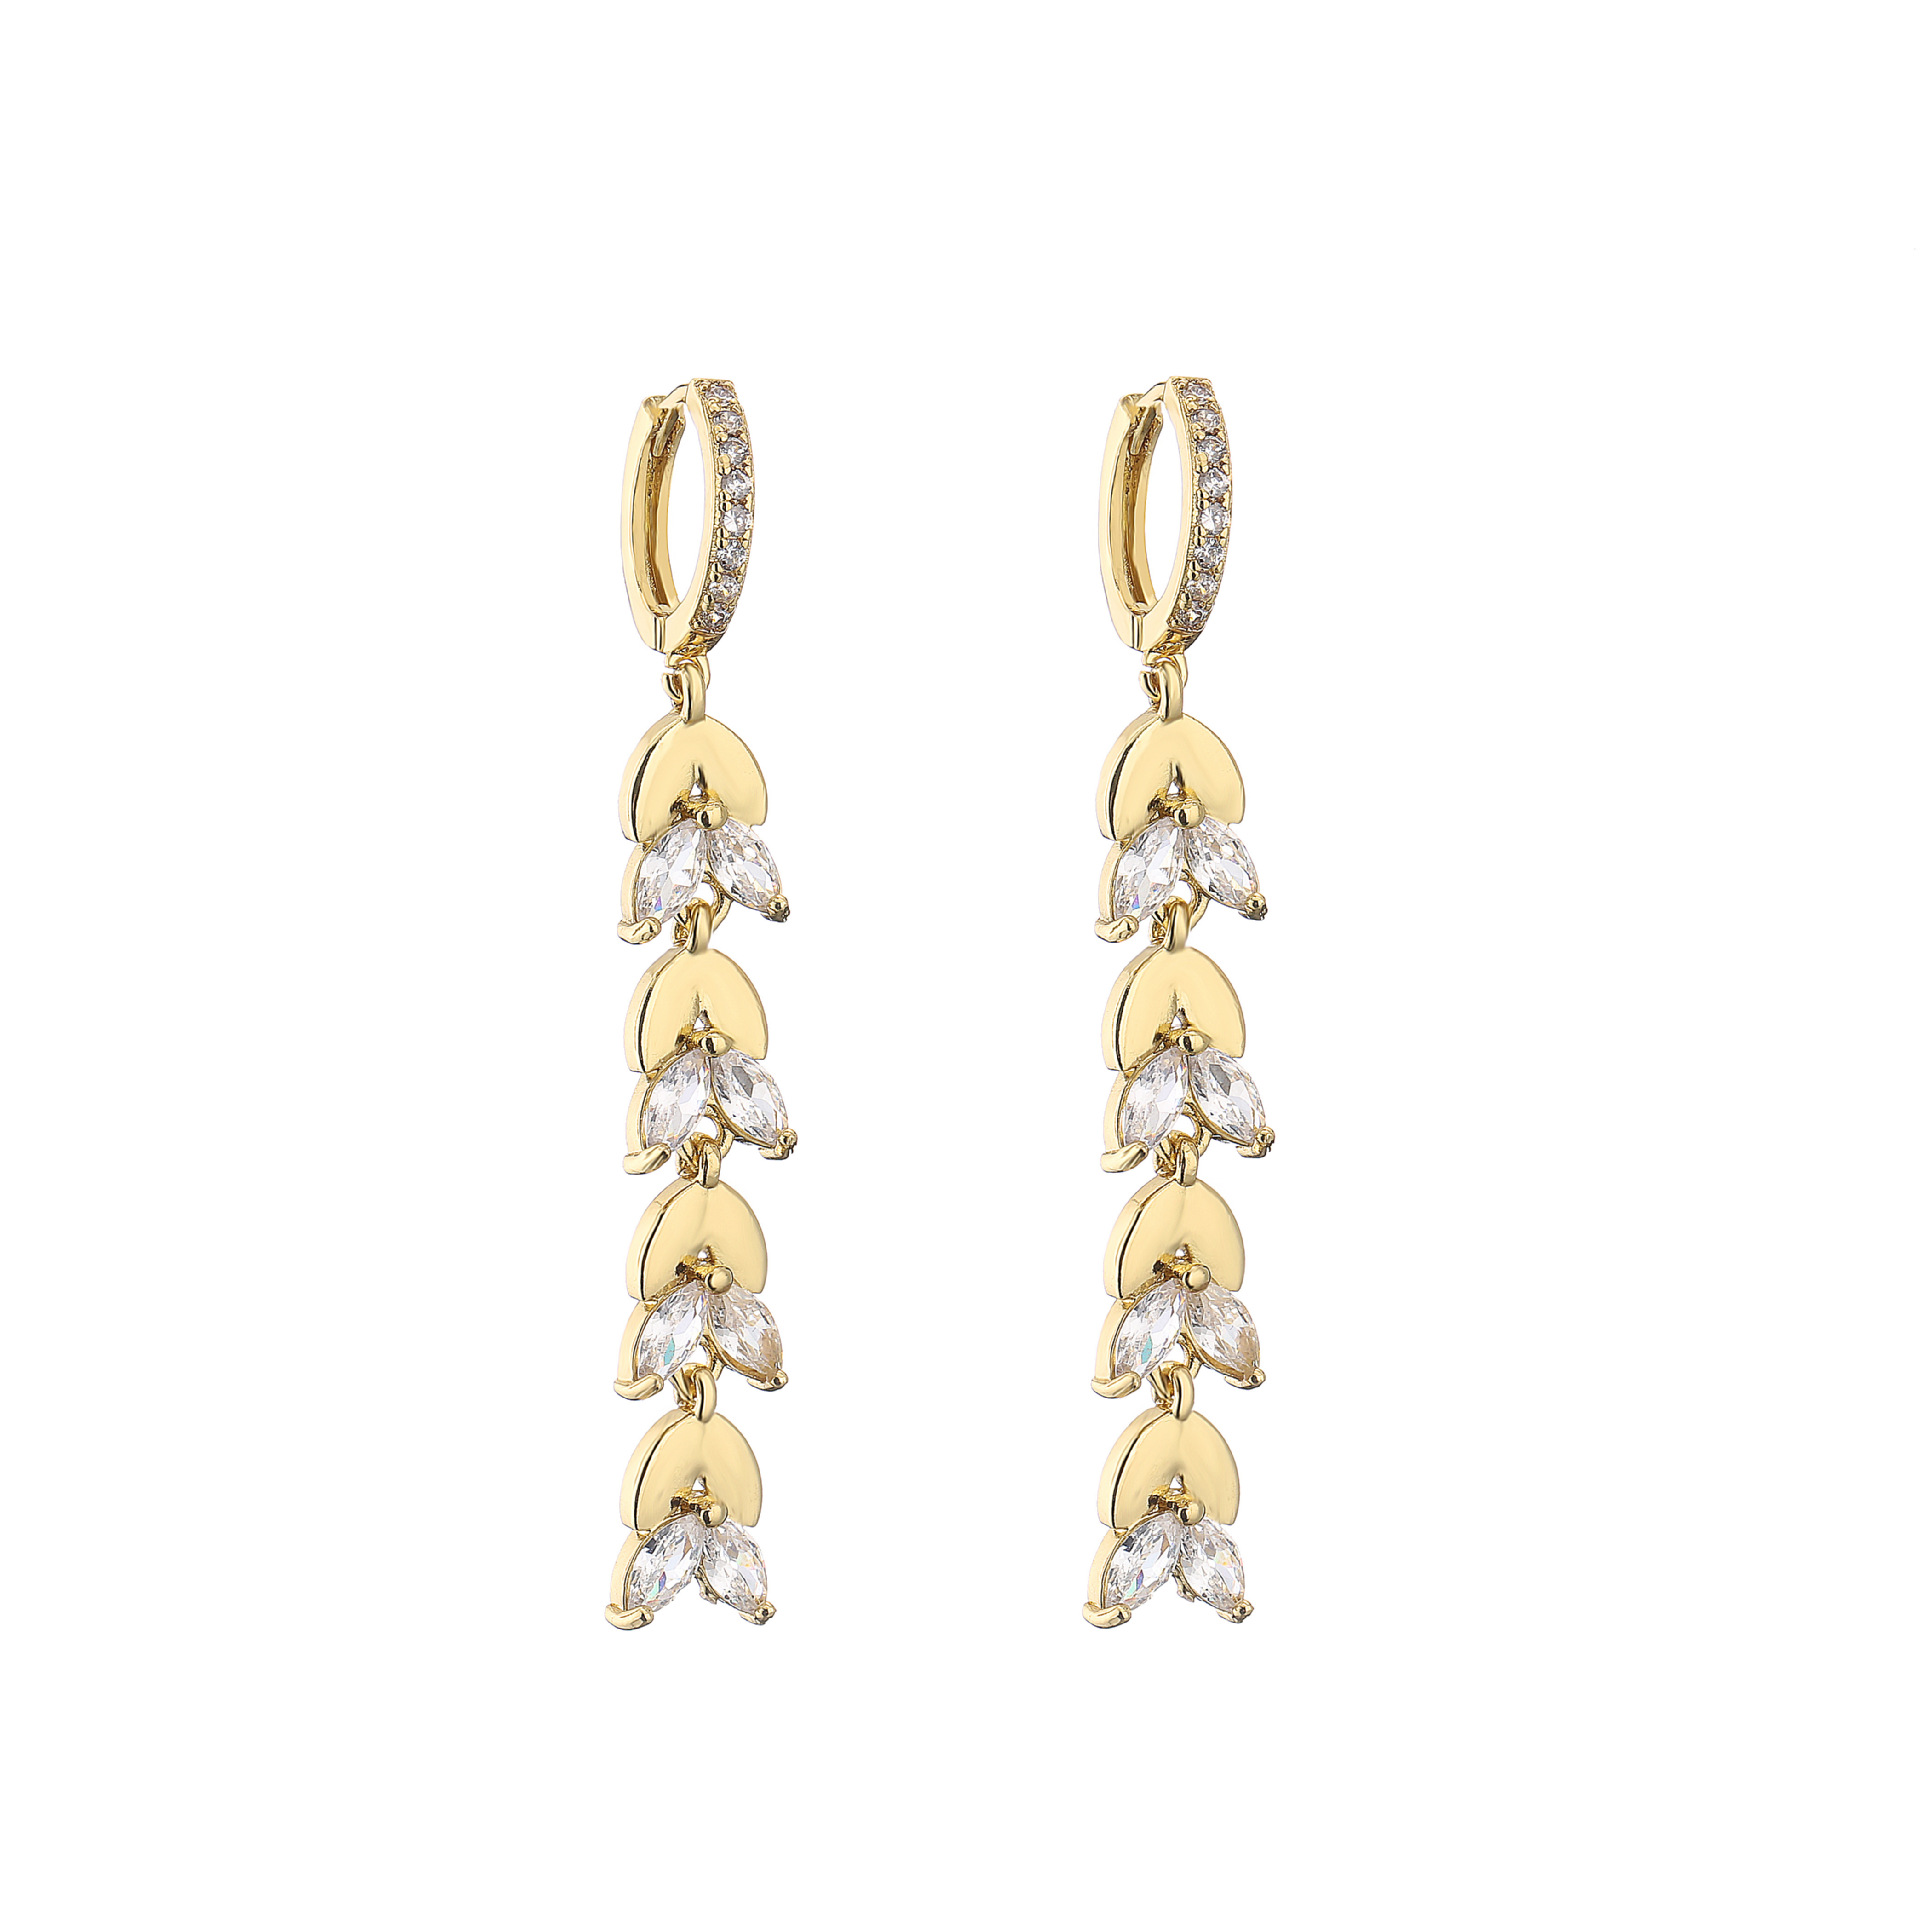 5:Gold Earrings 1 pair